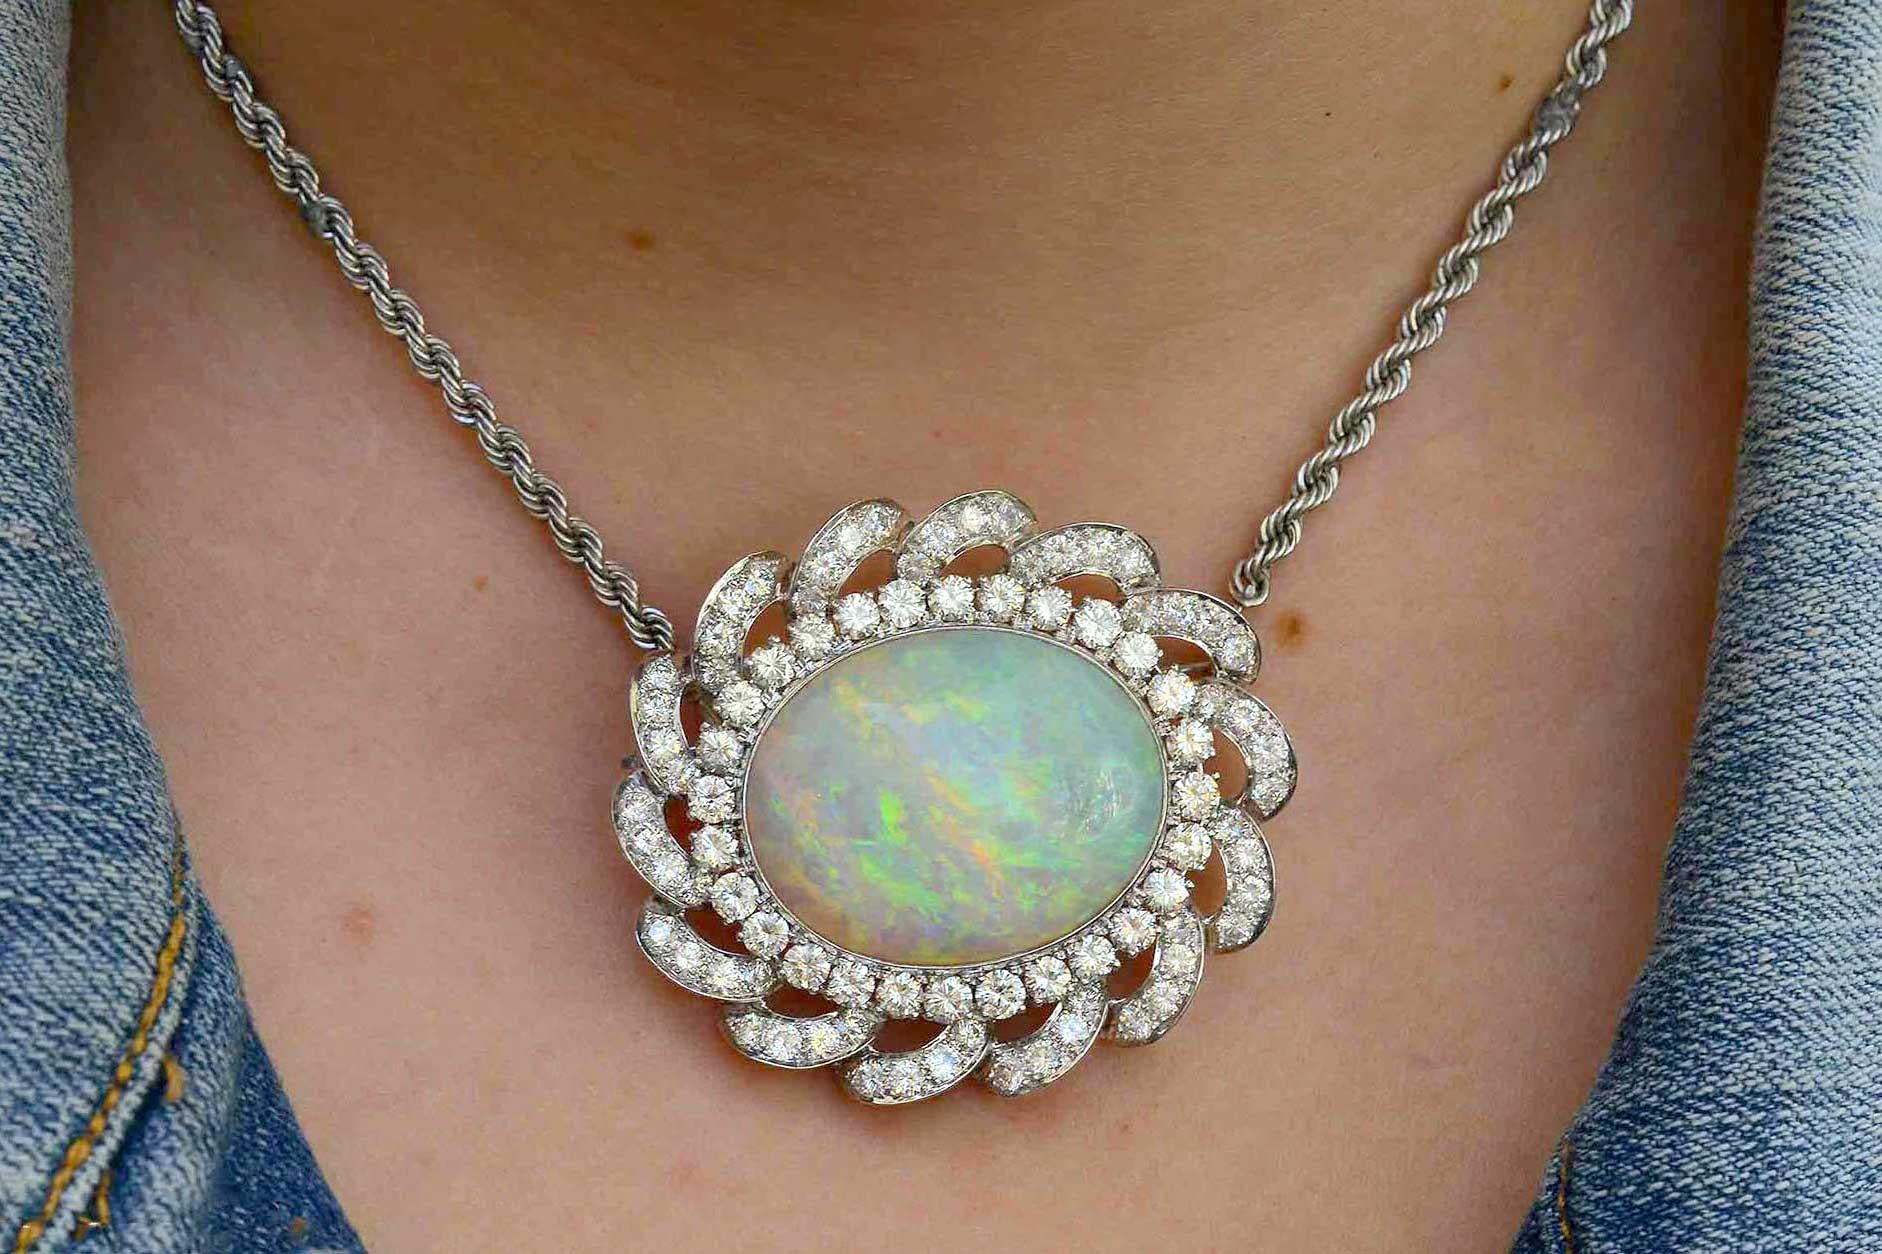 Un incroyable collier d'opale australienne de 33 carats, orné de plus de 8 carats de diamants presque parfaits, gravite autour d'une galaxie céleste composée d'une pierre précieuse étonnante, grande et ardente, imprégnée d'un éventail